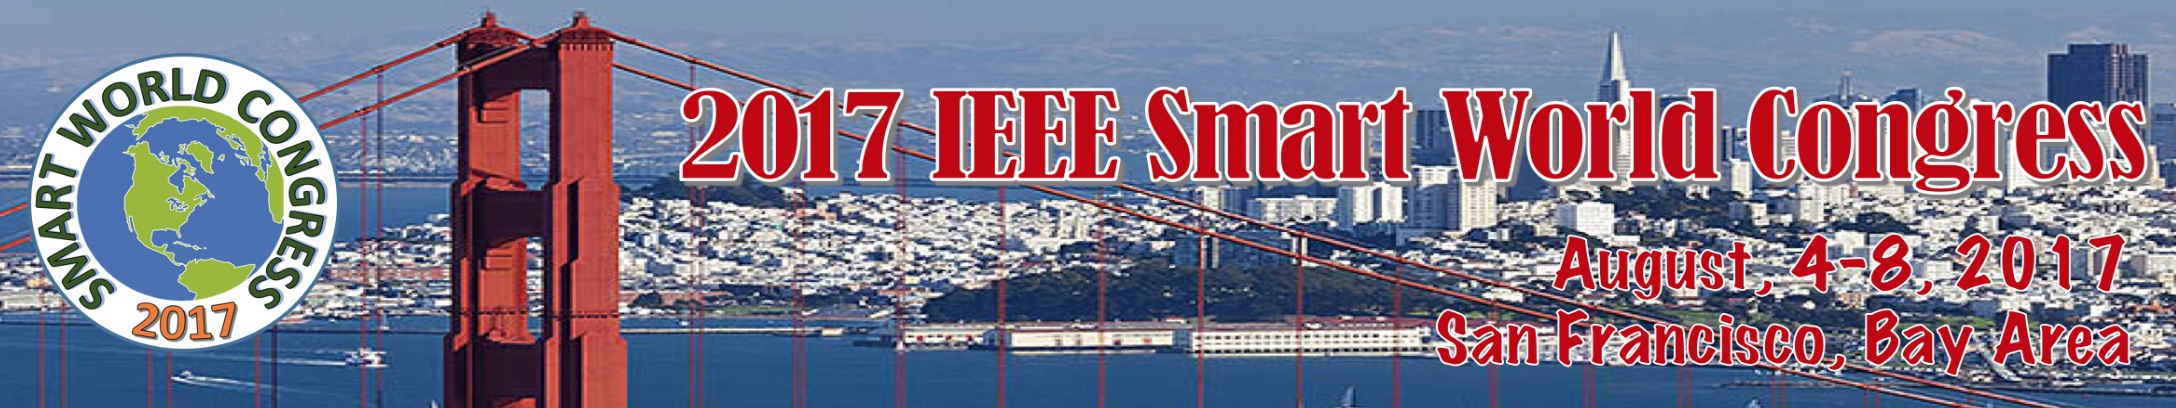 IEEE Smart World Congress 2017